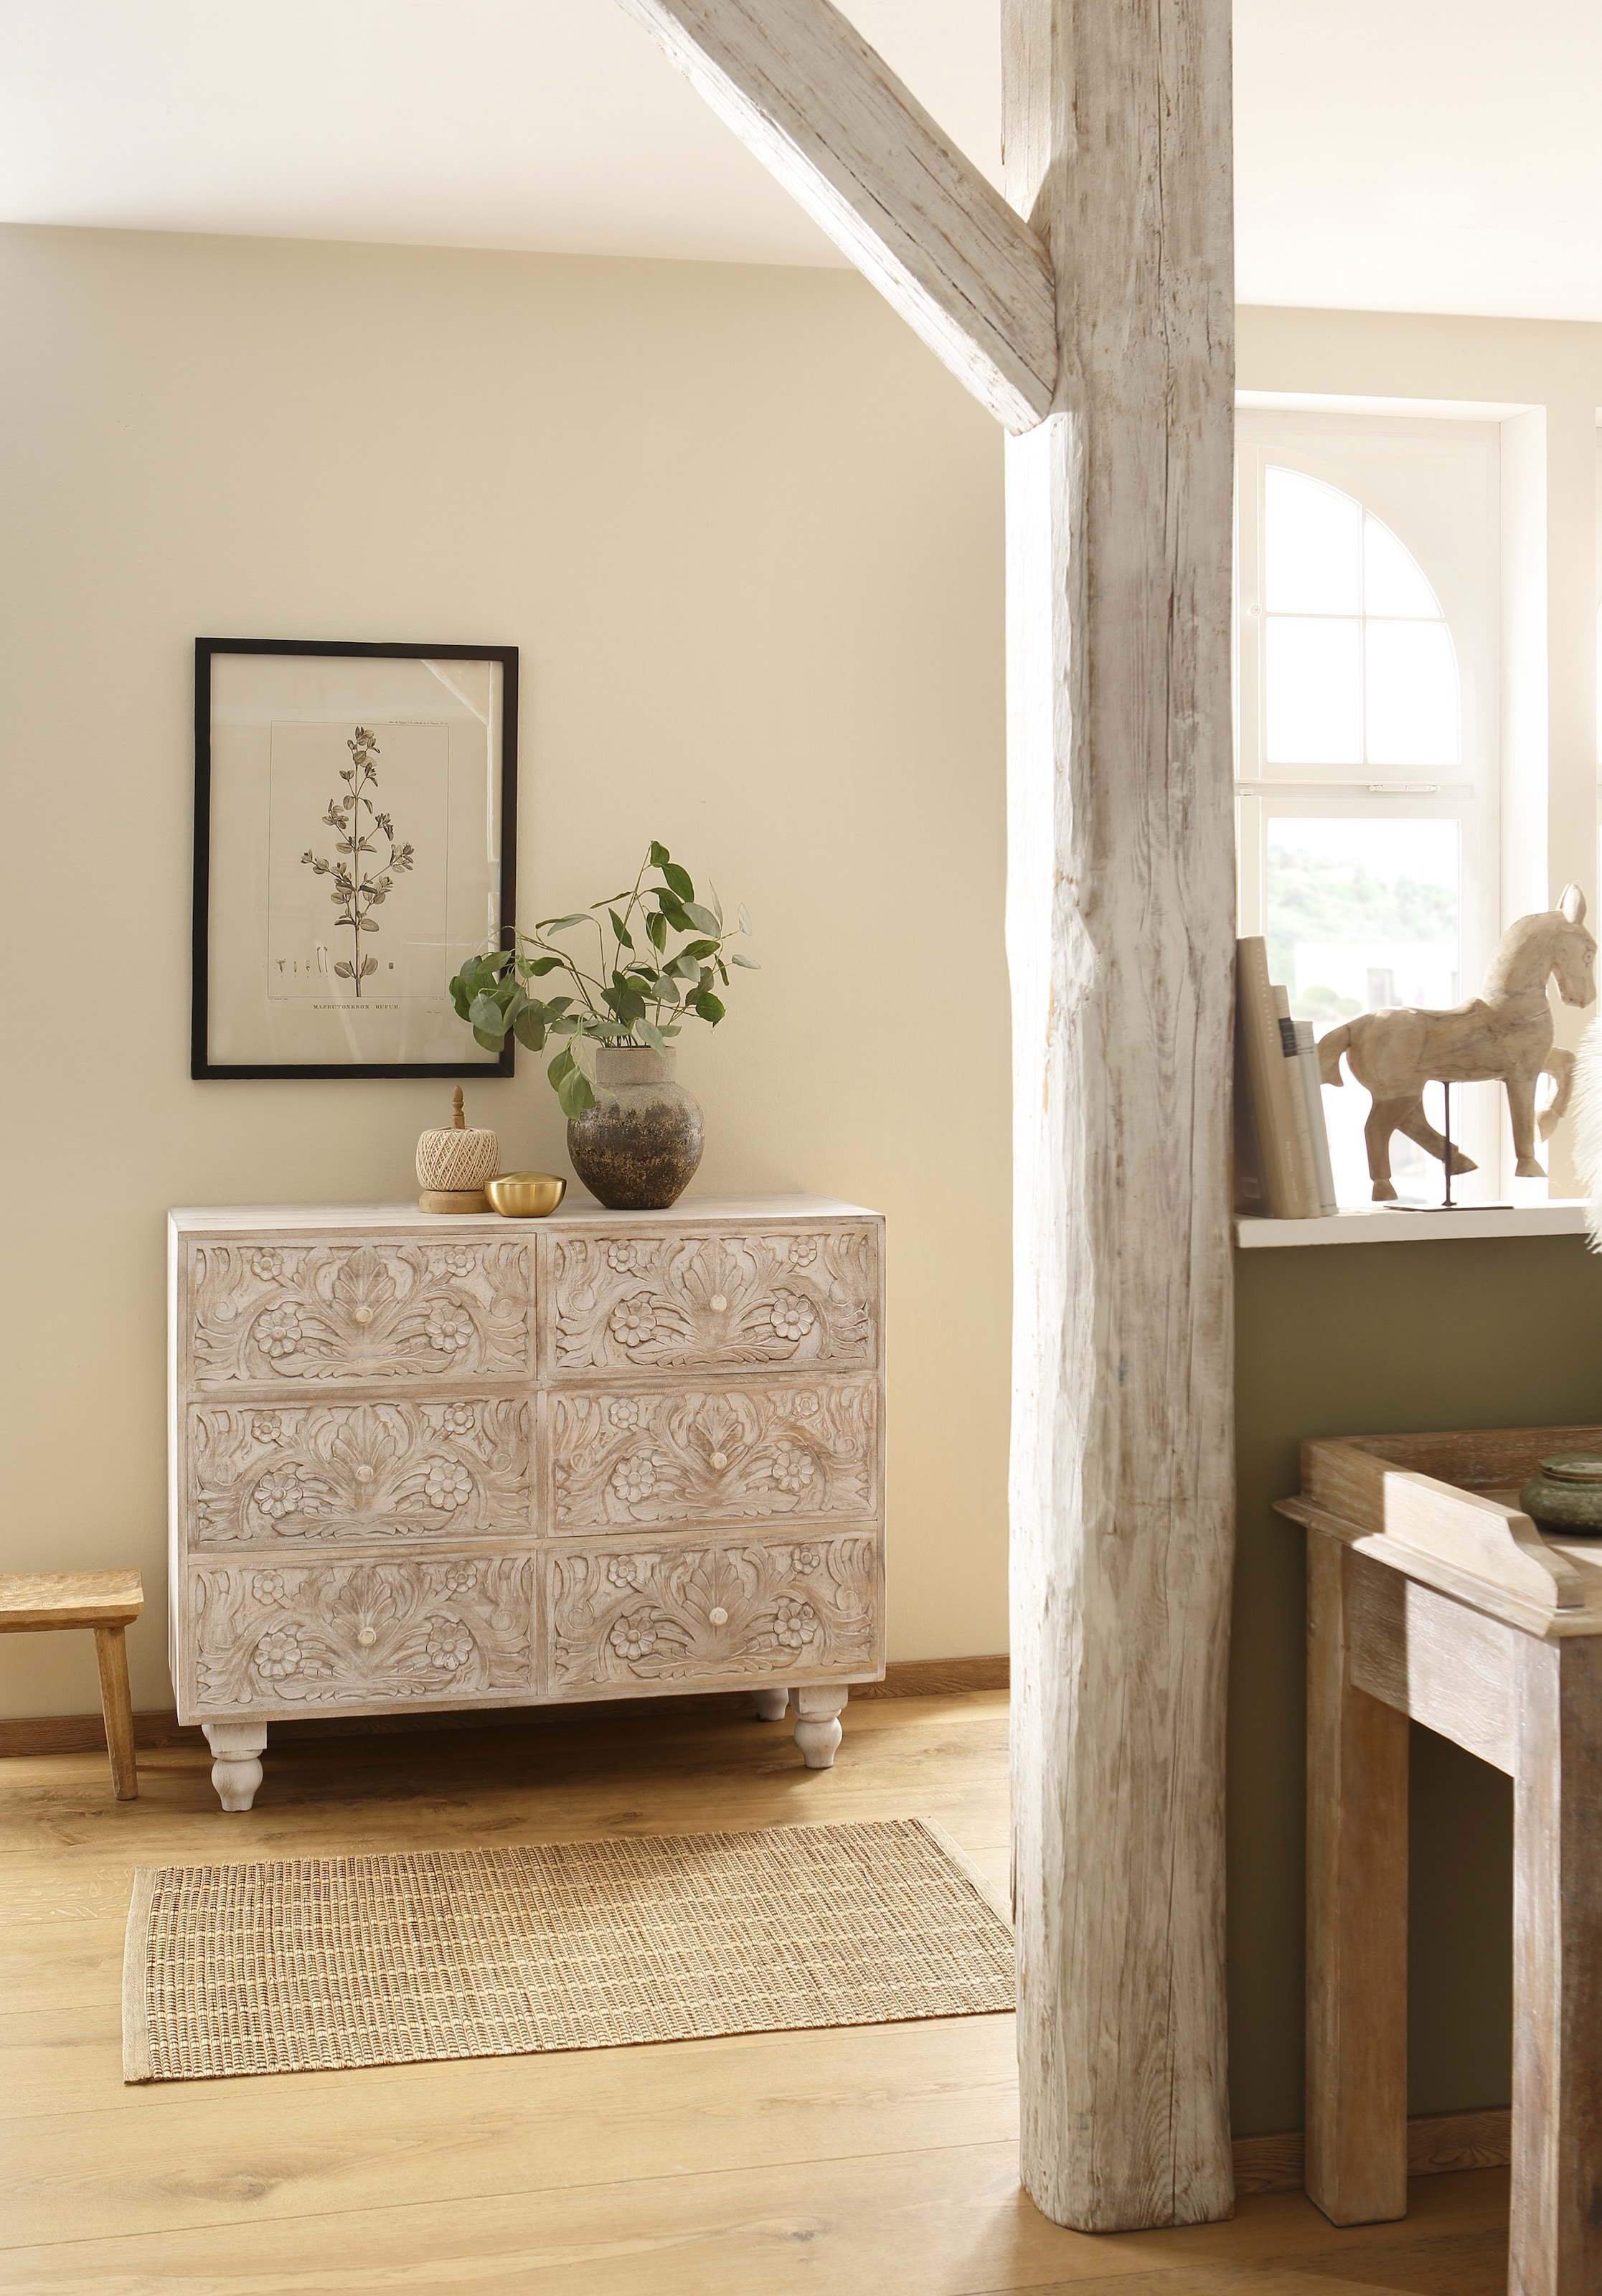 Home affaire Kommode »Lavin«, Mangoholz, mit dekorativen Schnitzereien, Handgefertigt, Breite 110 cm